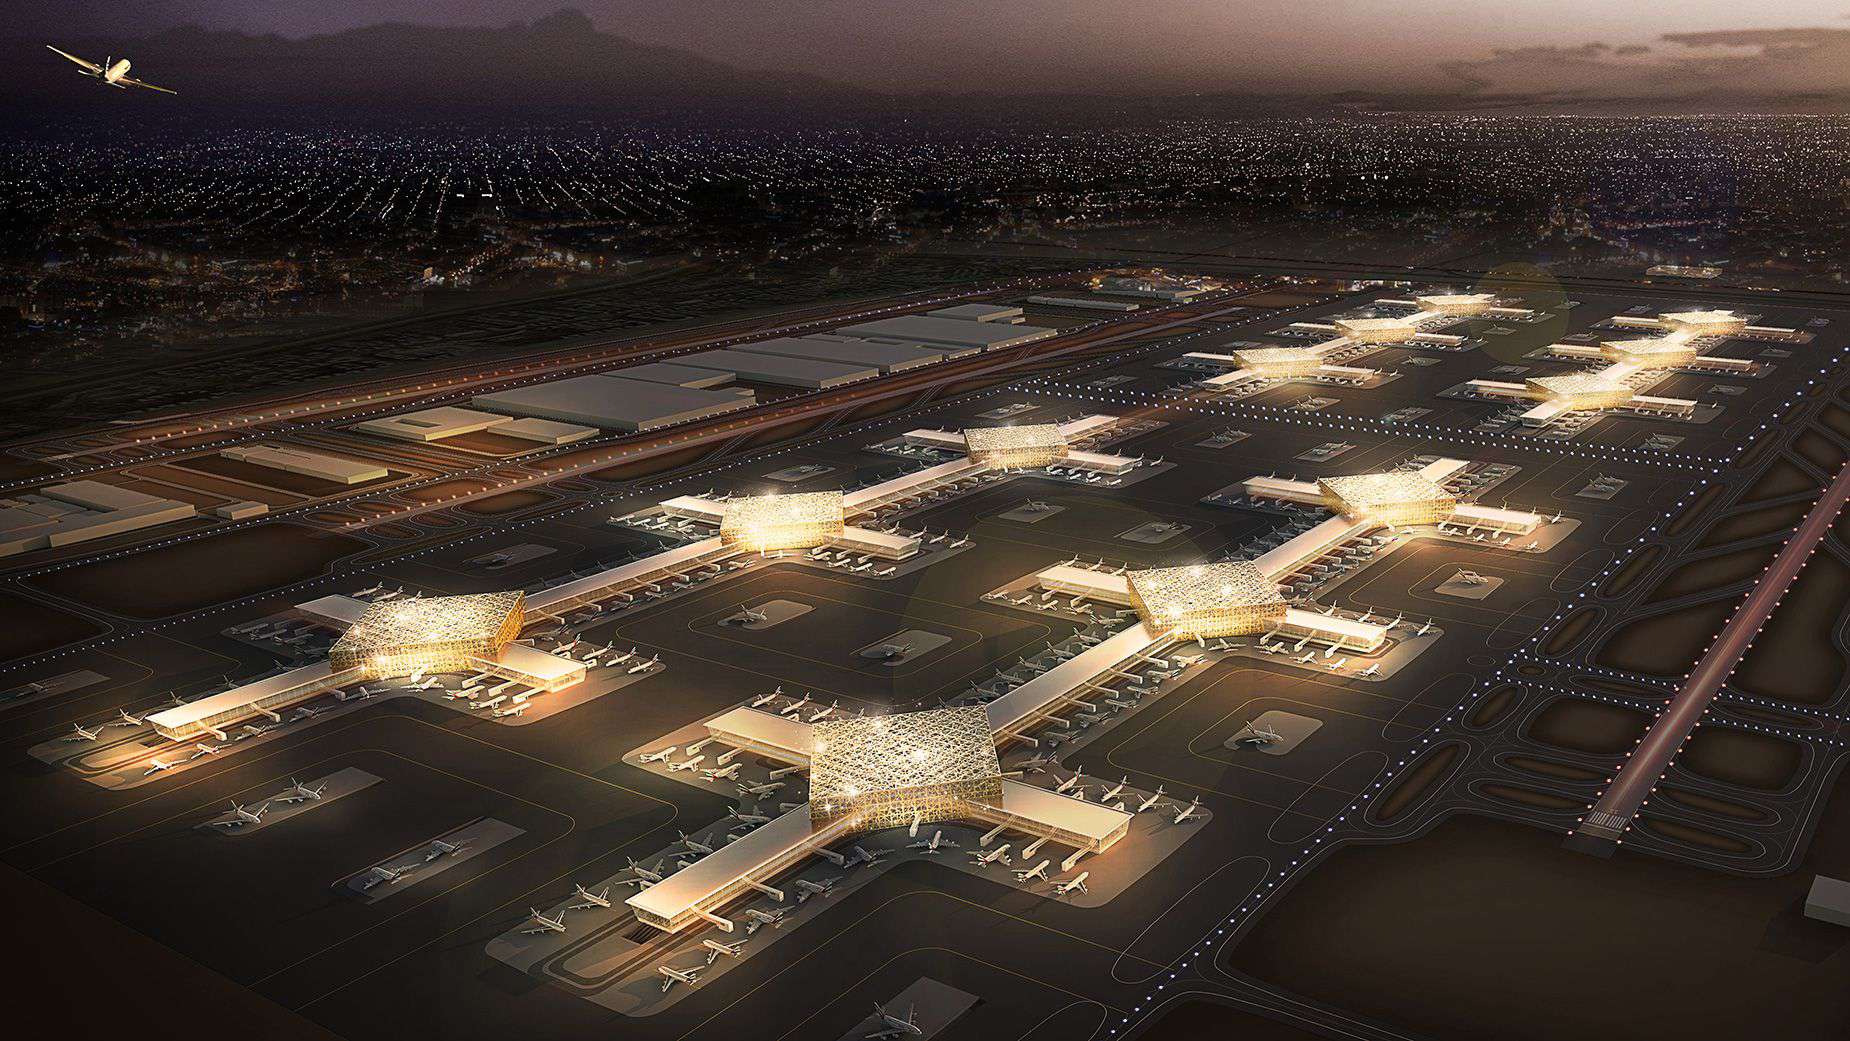 Դուբայում խոստանում են կառուցել աշխարհի ամենամեծ ու ծանրաբեռնված օդանավակայանը